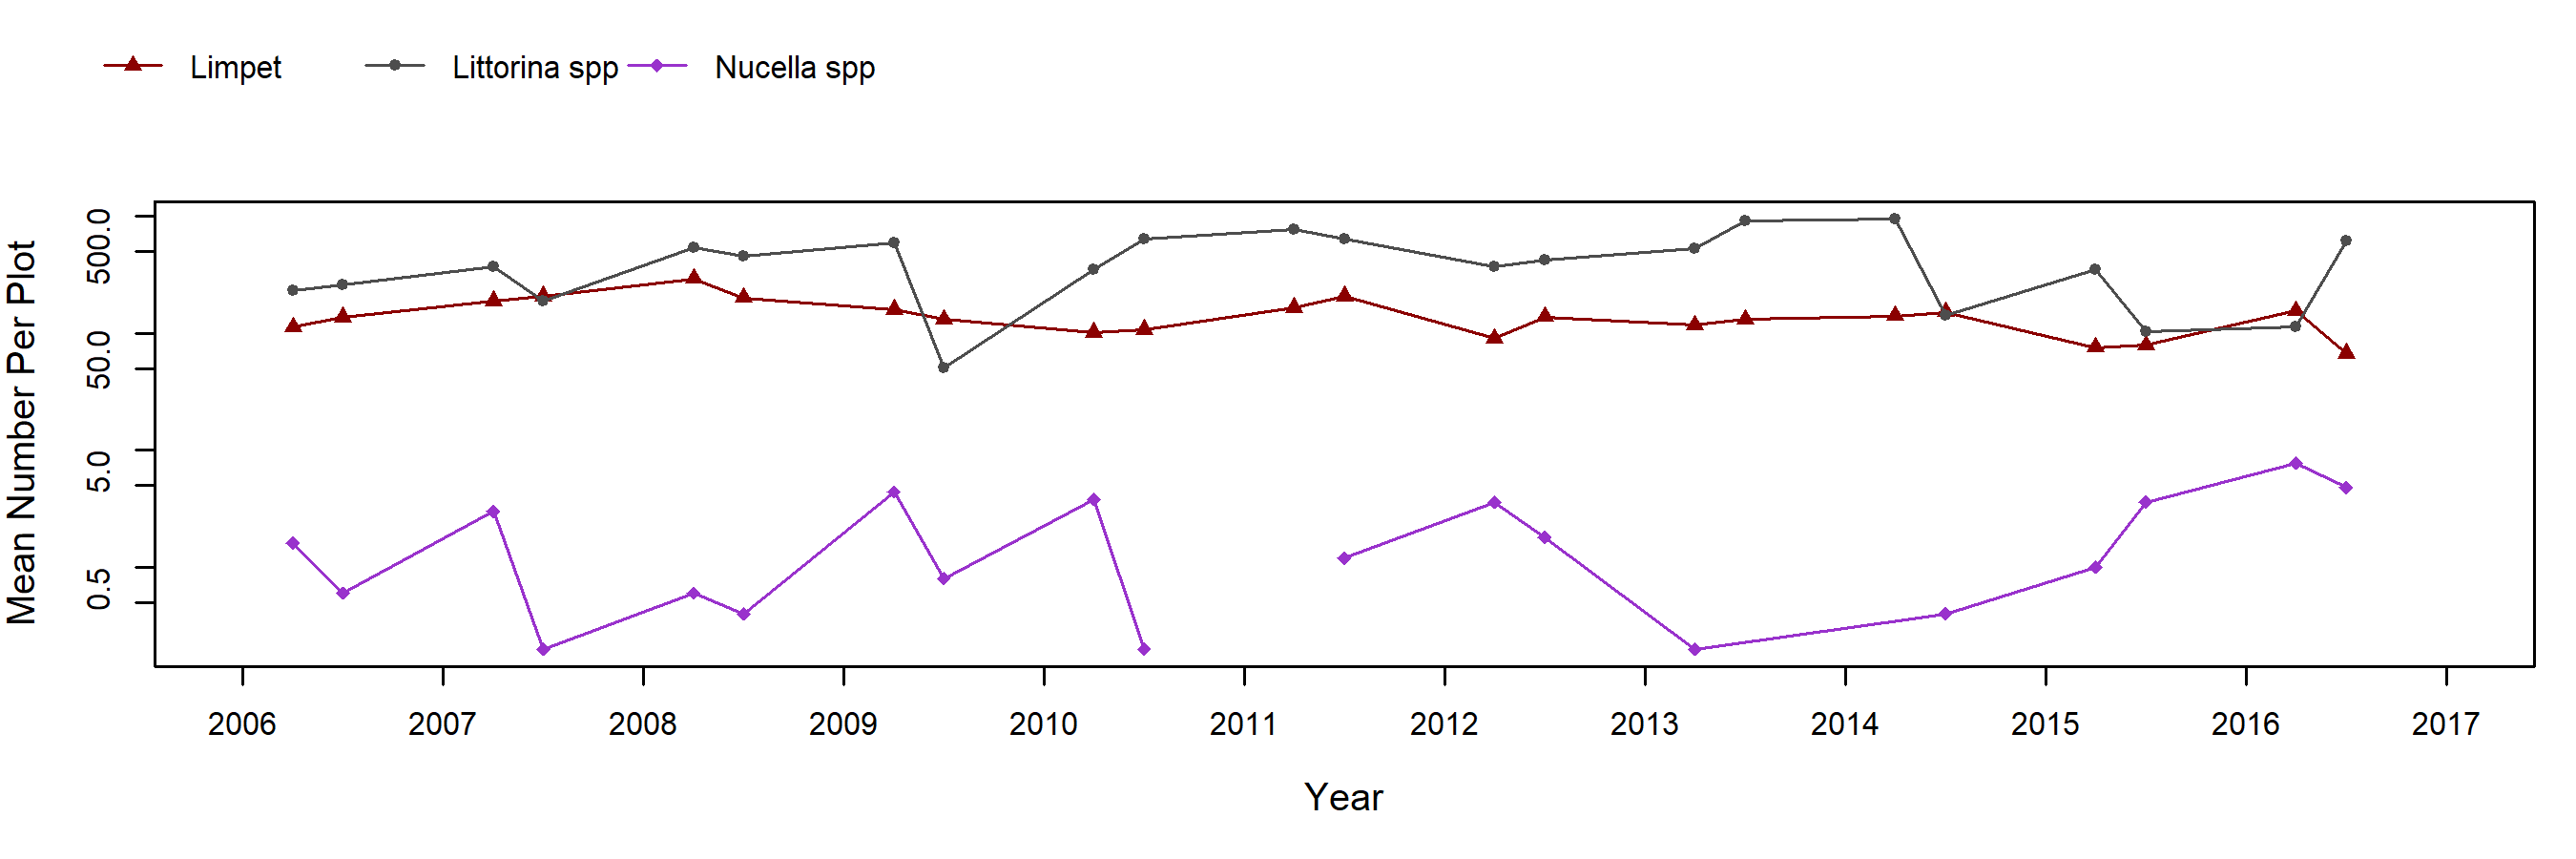 Enderts Pelvetiopsis trend plot